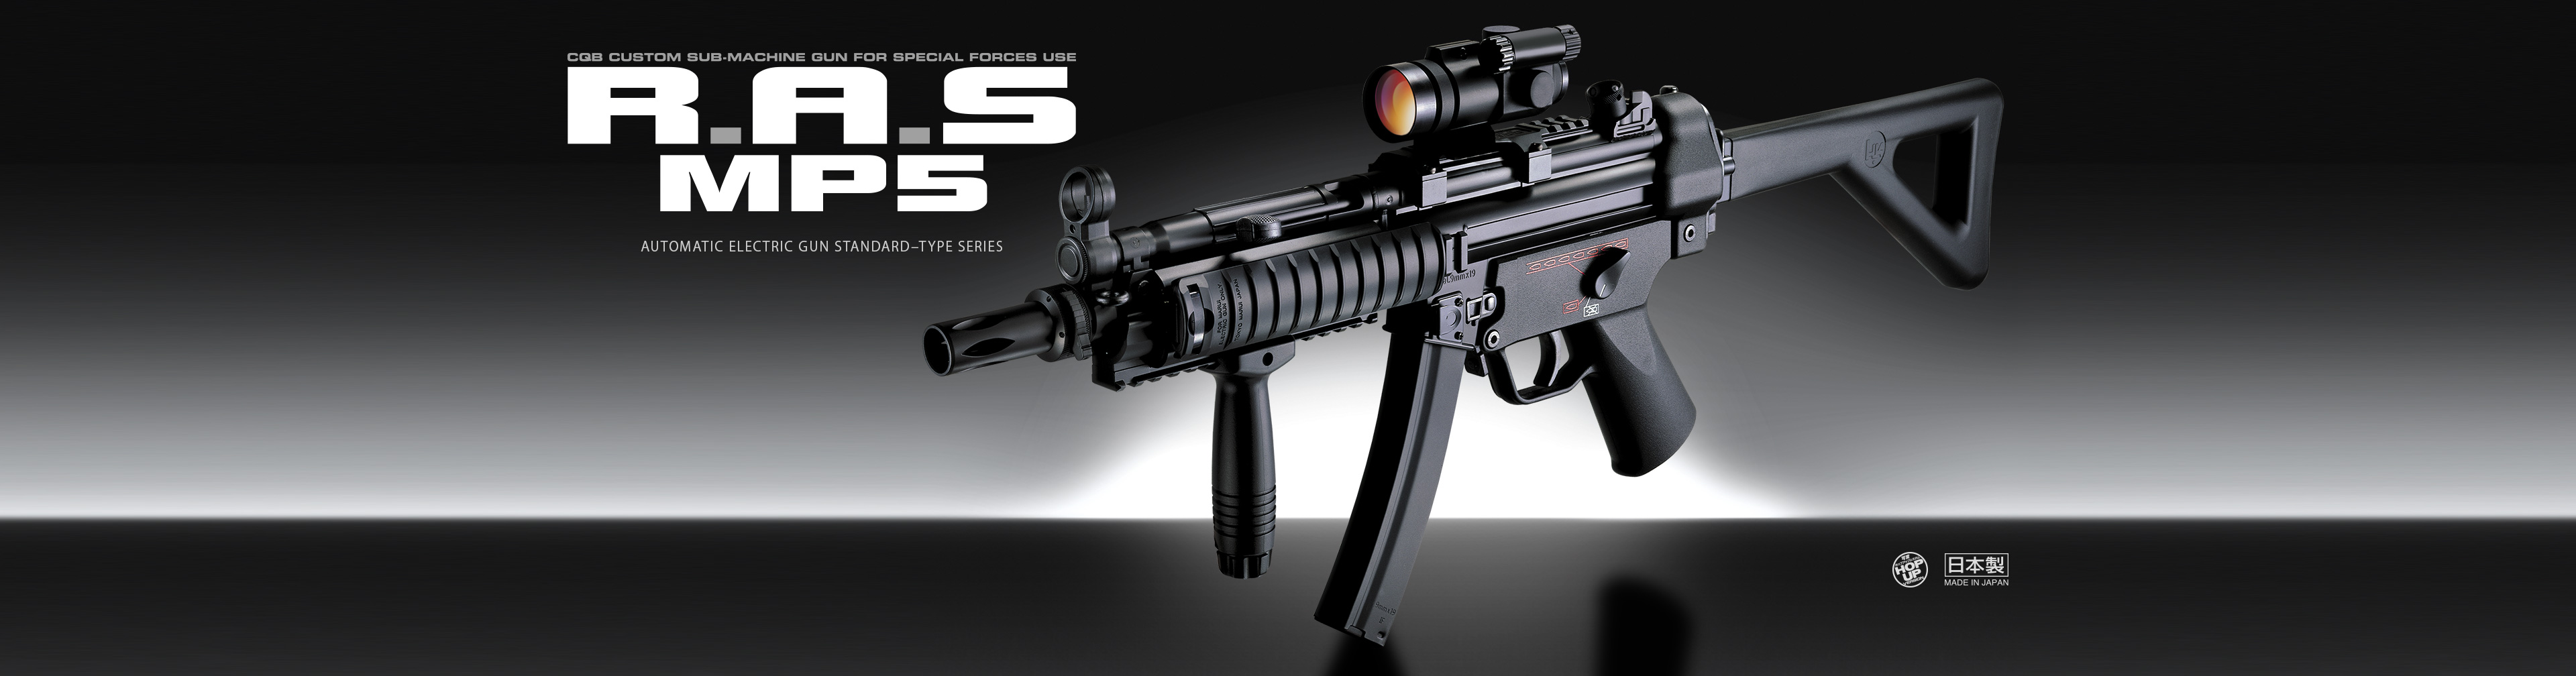 H&K MP5 R.A.S.